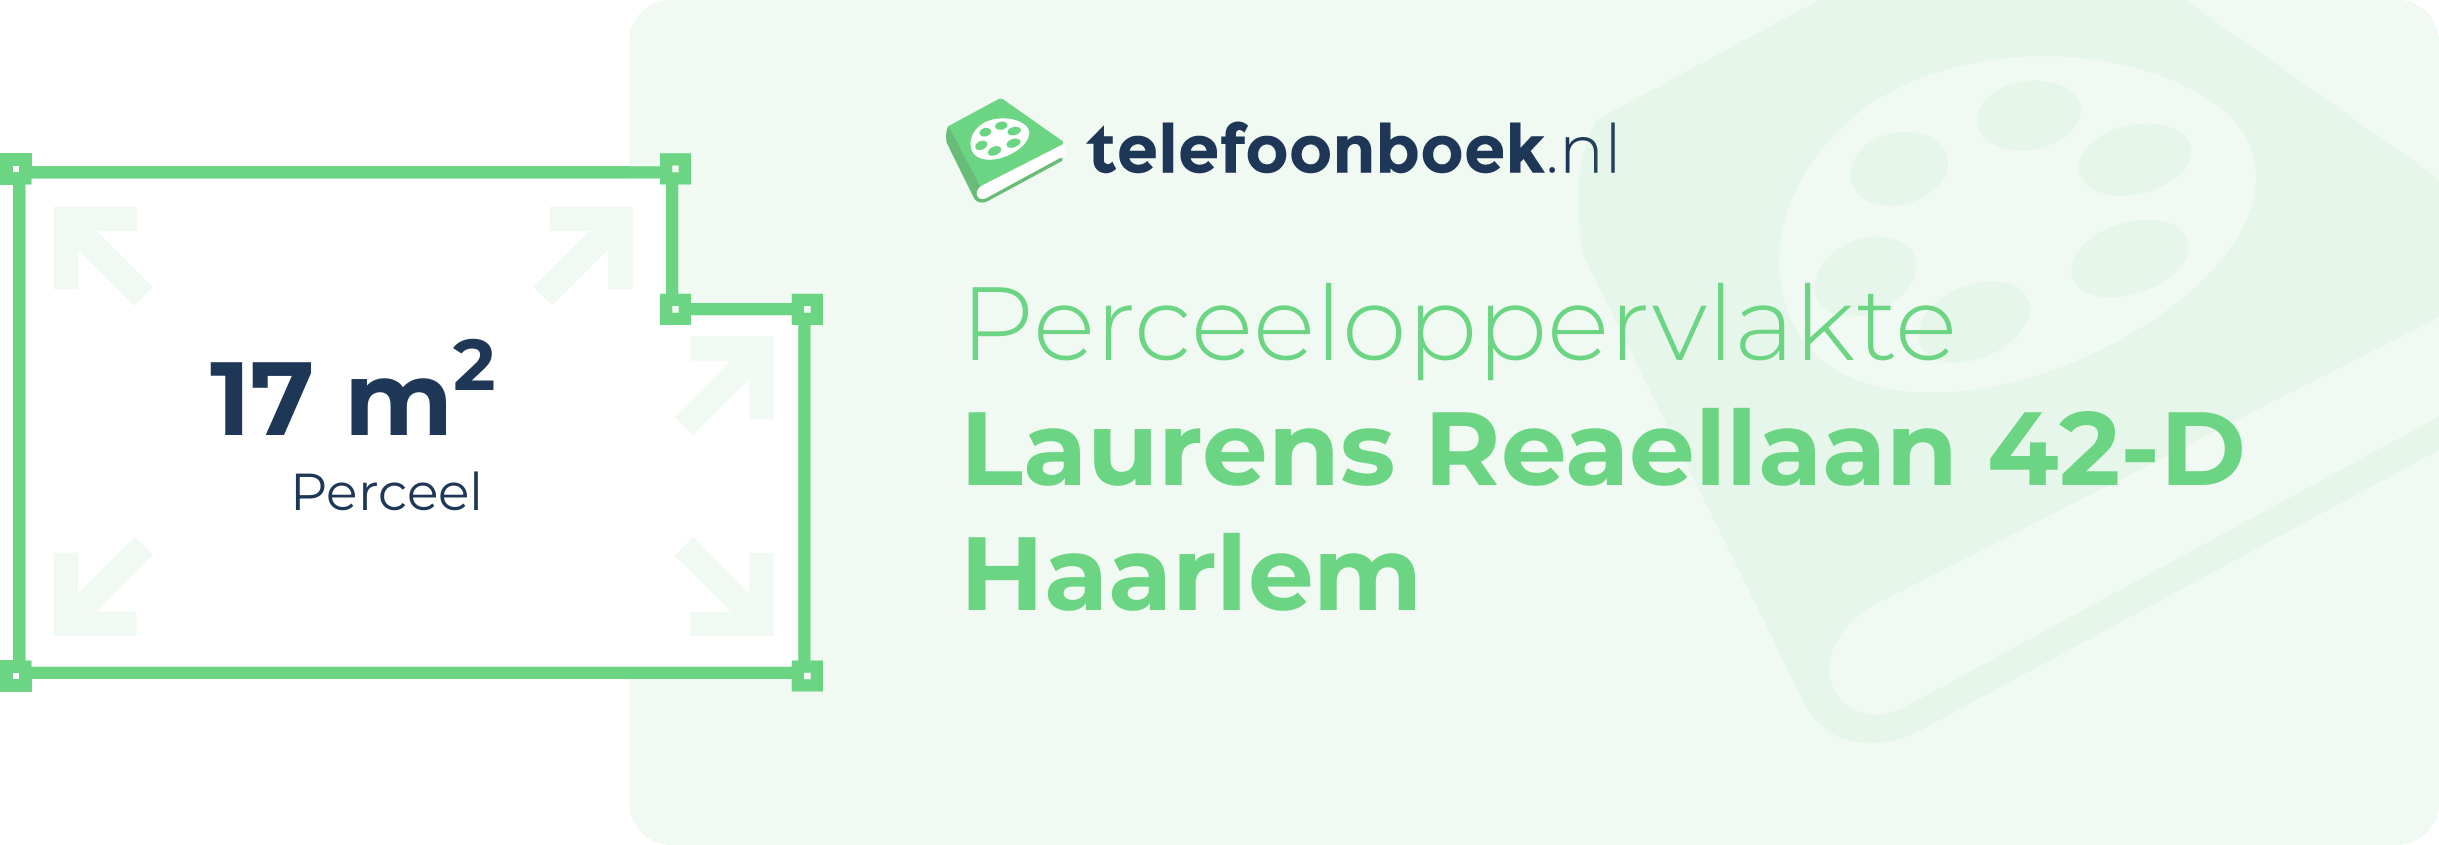 Perceeloppervlakte Laurens Reaellaan 42-D Haarlem